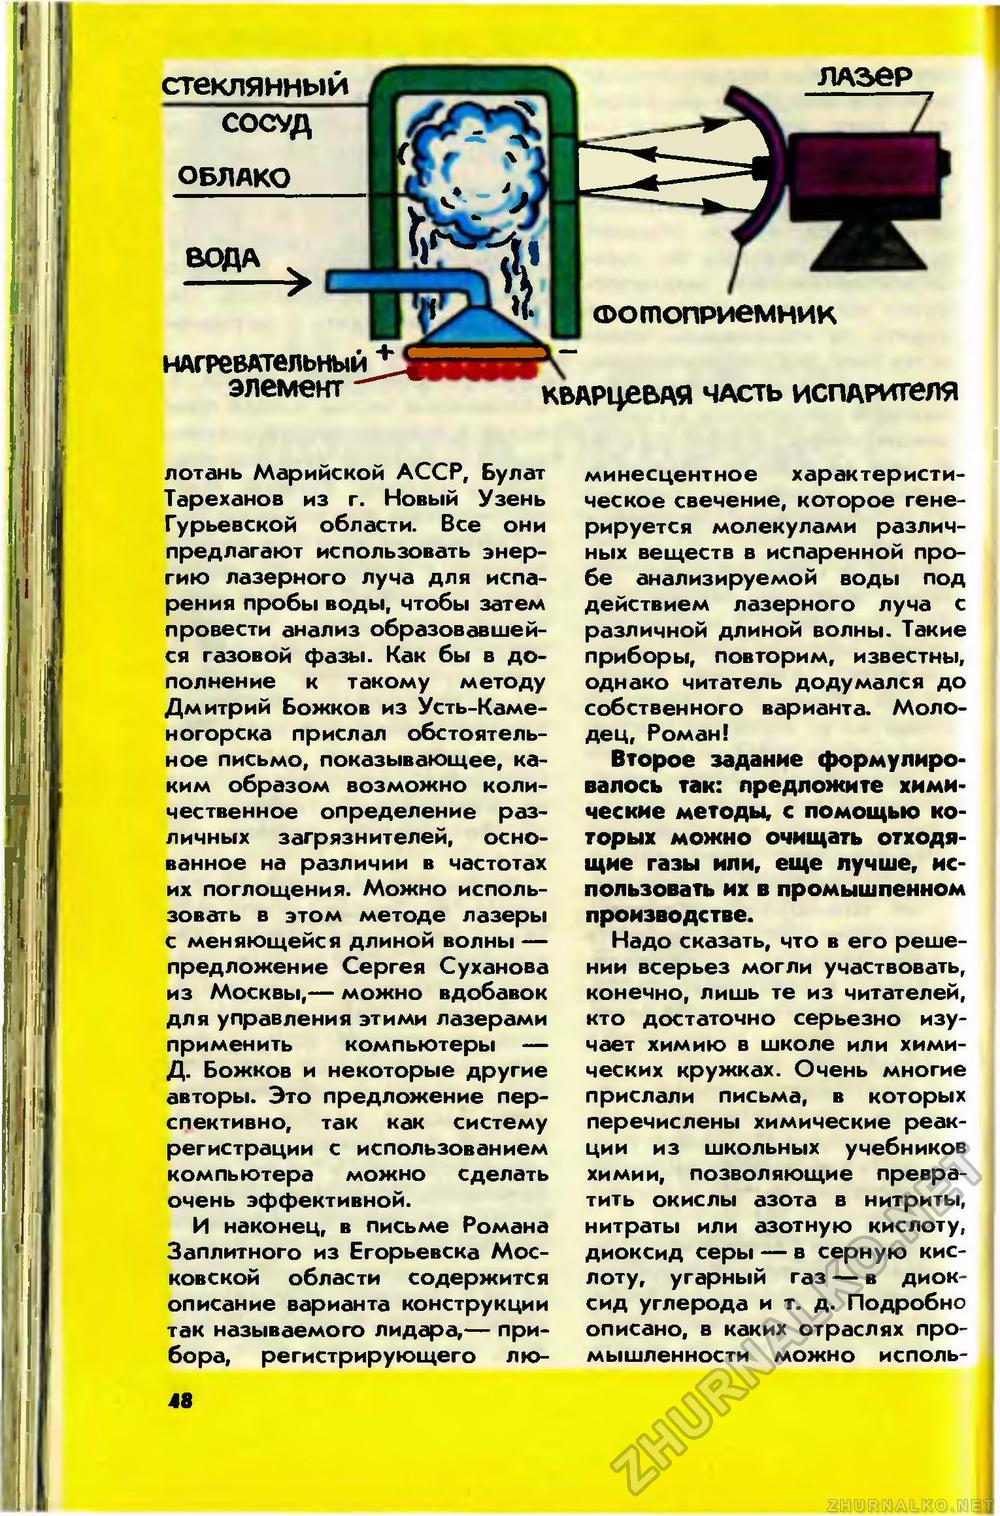   1989-08,  51